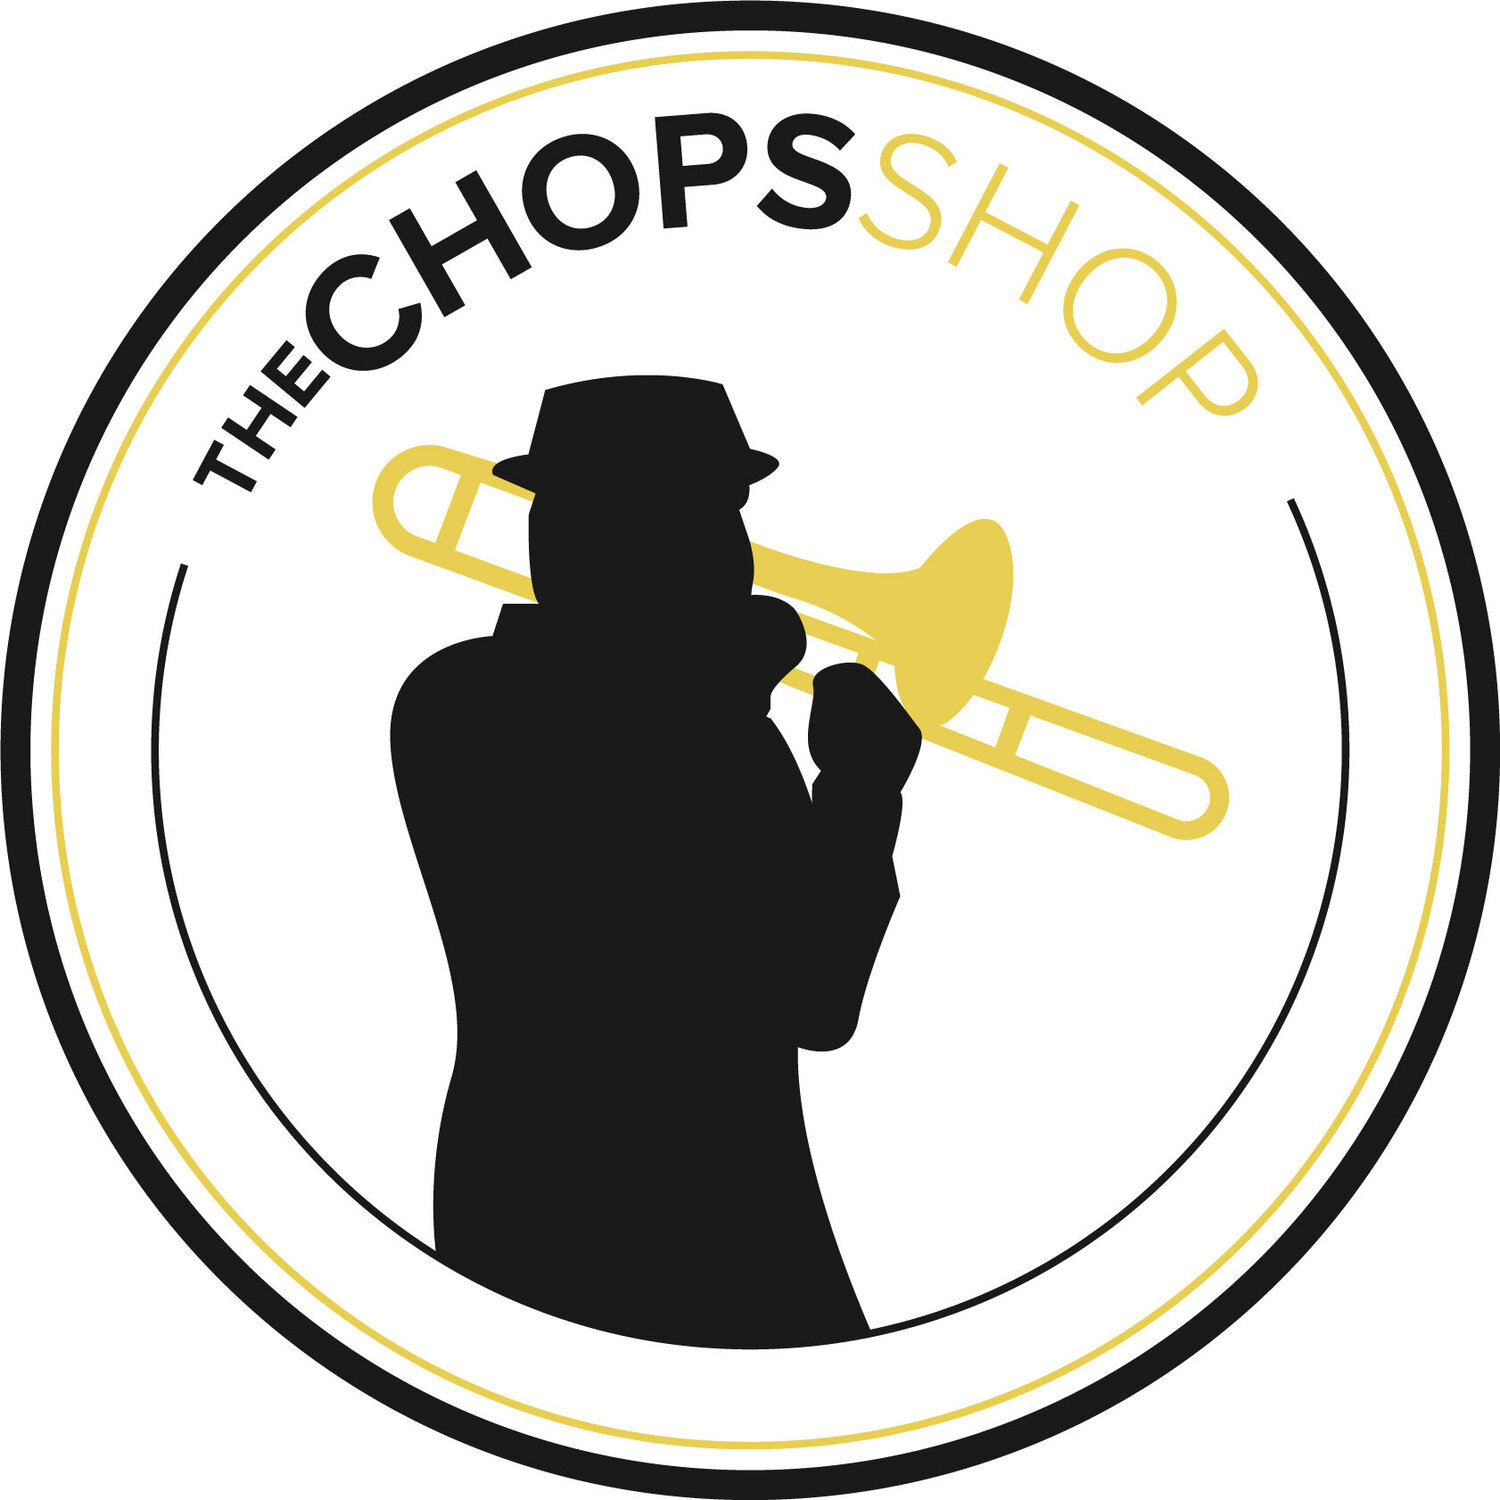 The Chops Shop 